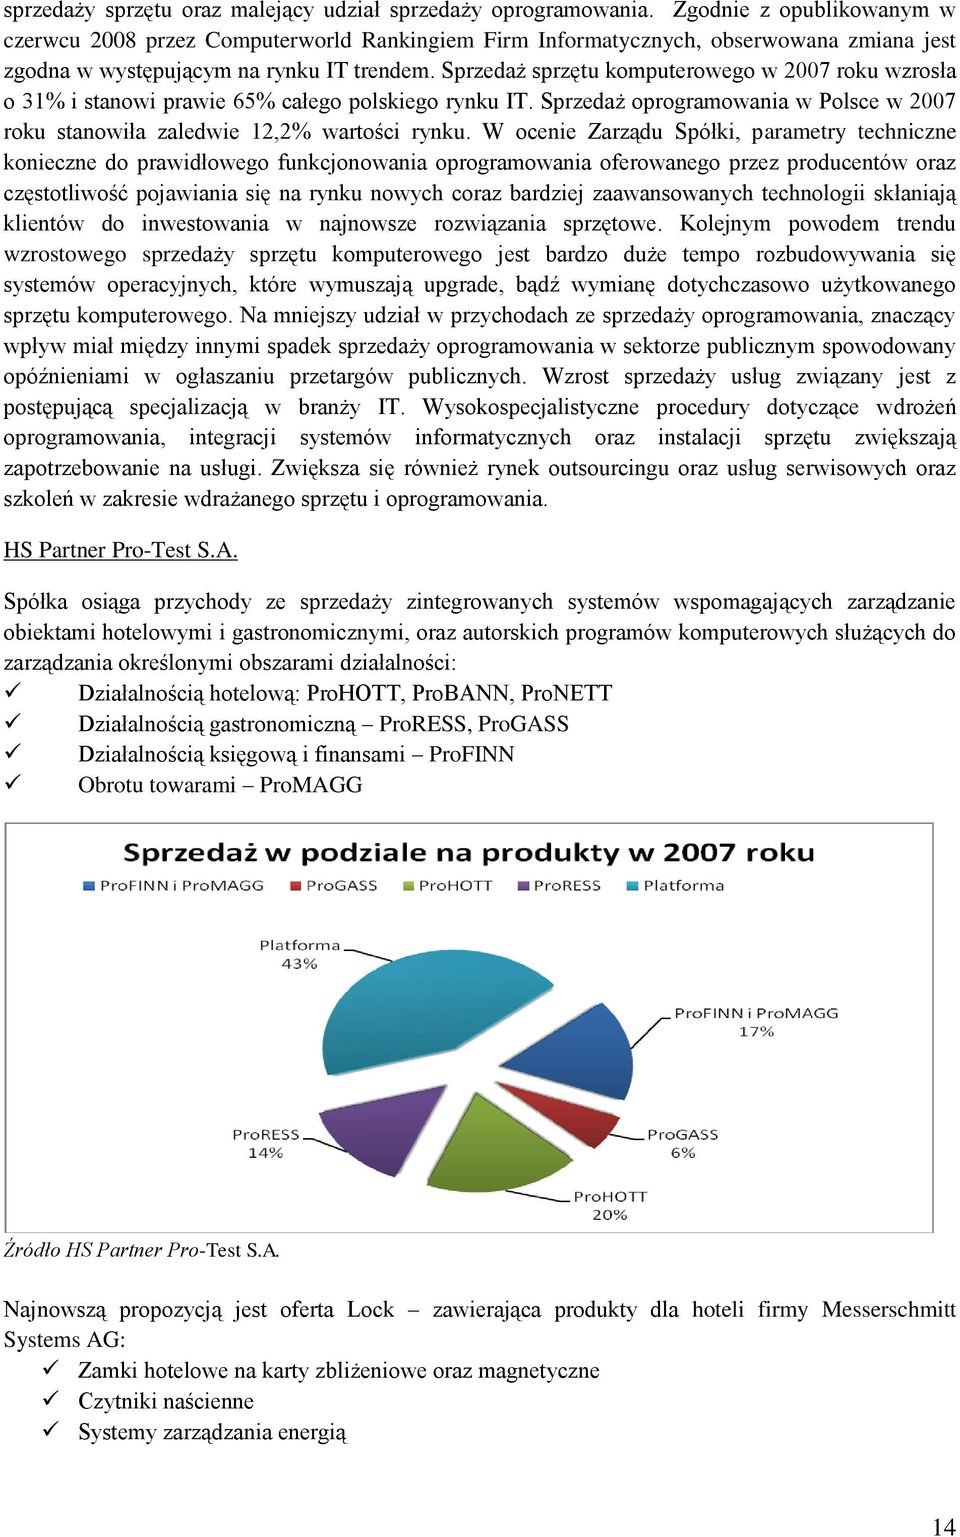 Sprzedaż sprzętu komputerowego w 2007 roku wzrosła o 31% i stanowi prawie 65% całego polskiego rynku IT. Sprzedaż oprogramowania w Polsce w 2007 roku stanowiła zaledwie 12,2% wartości rynku.